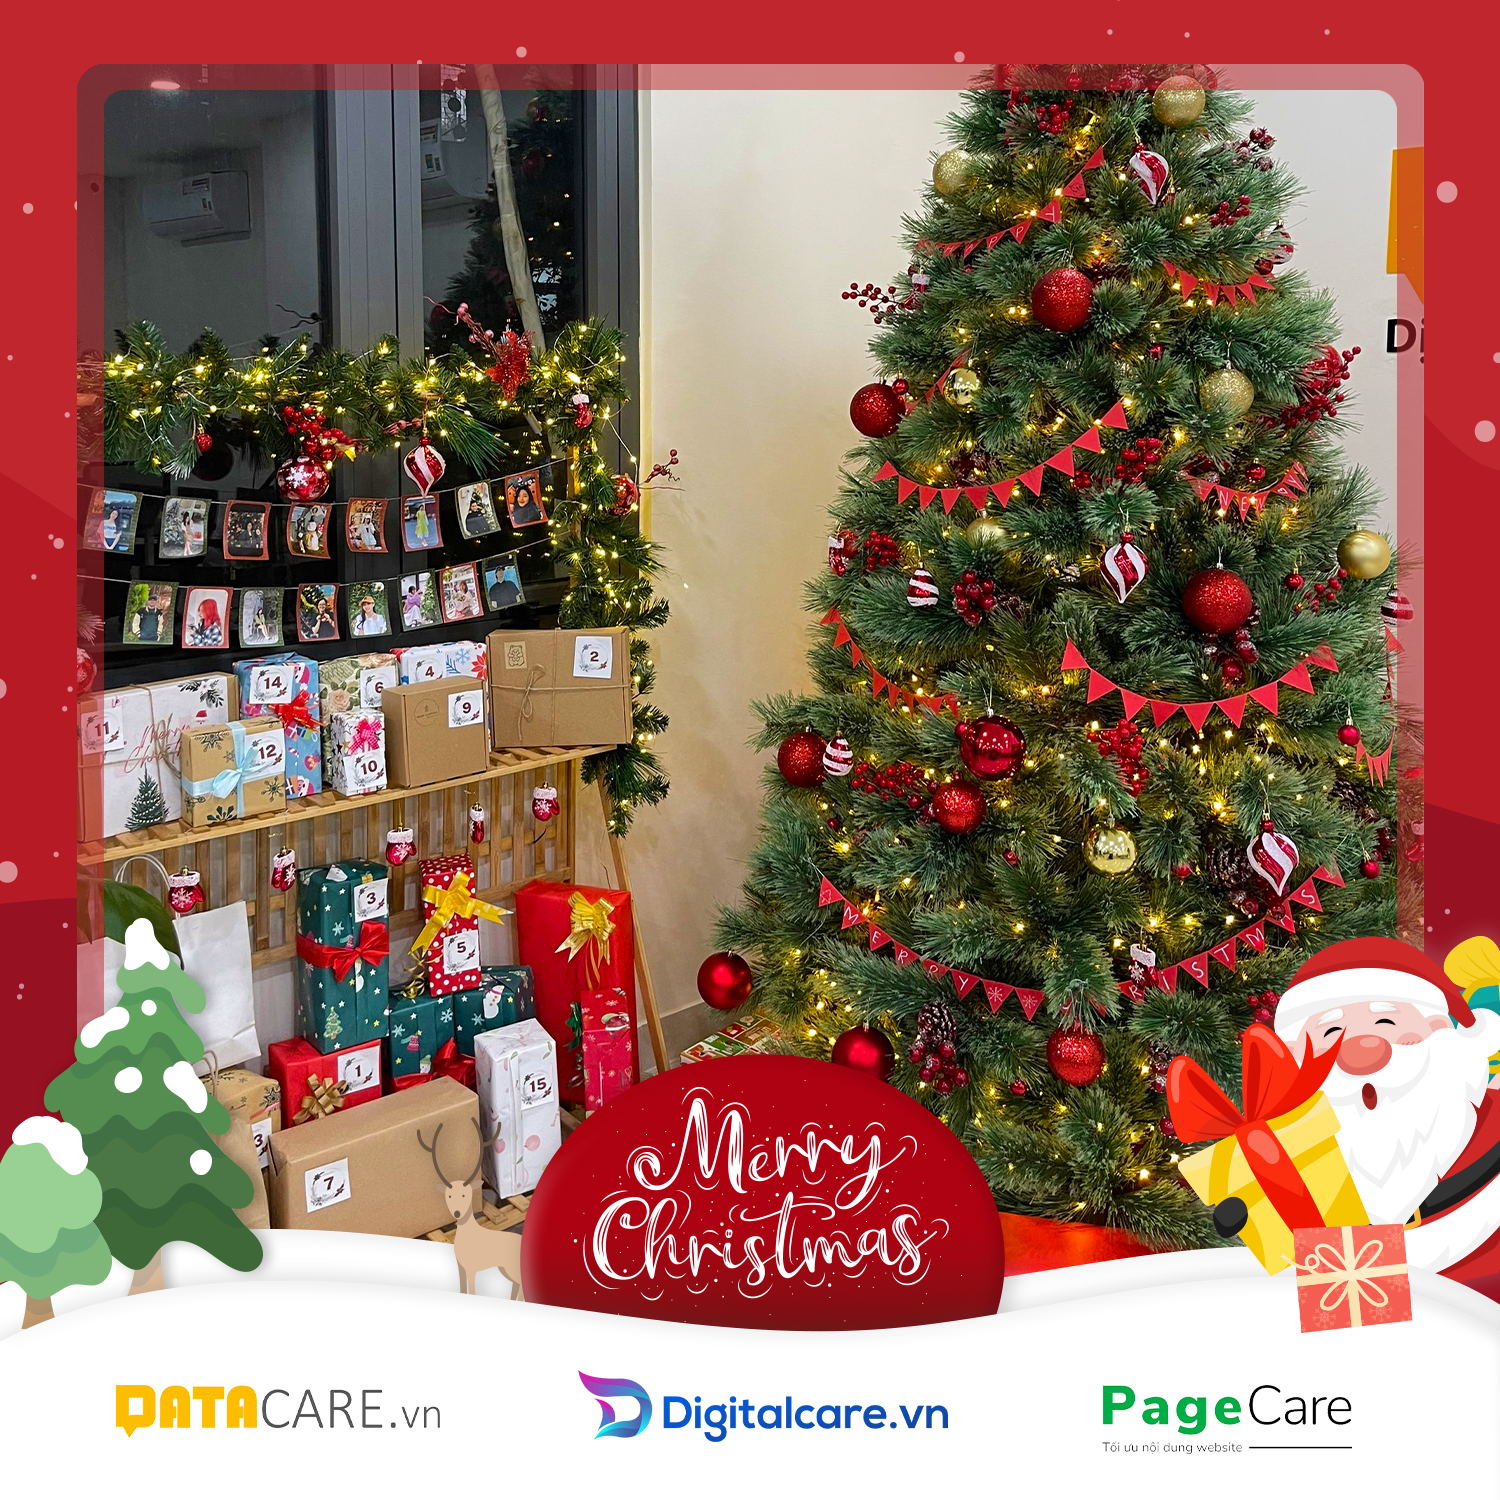 Hòa mình cùng không khí Giáng SInh với Datacare